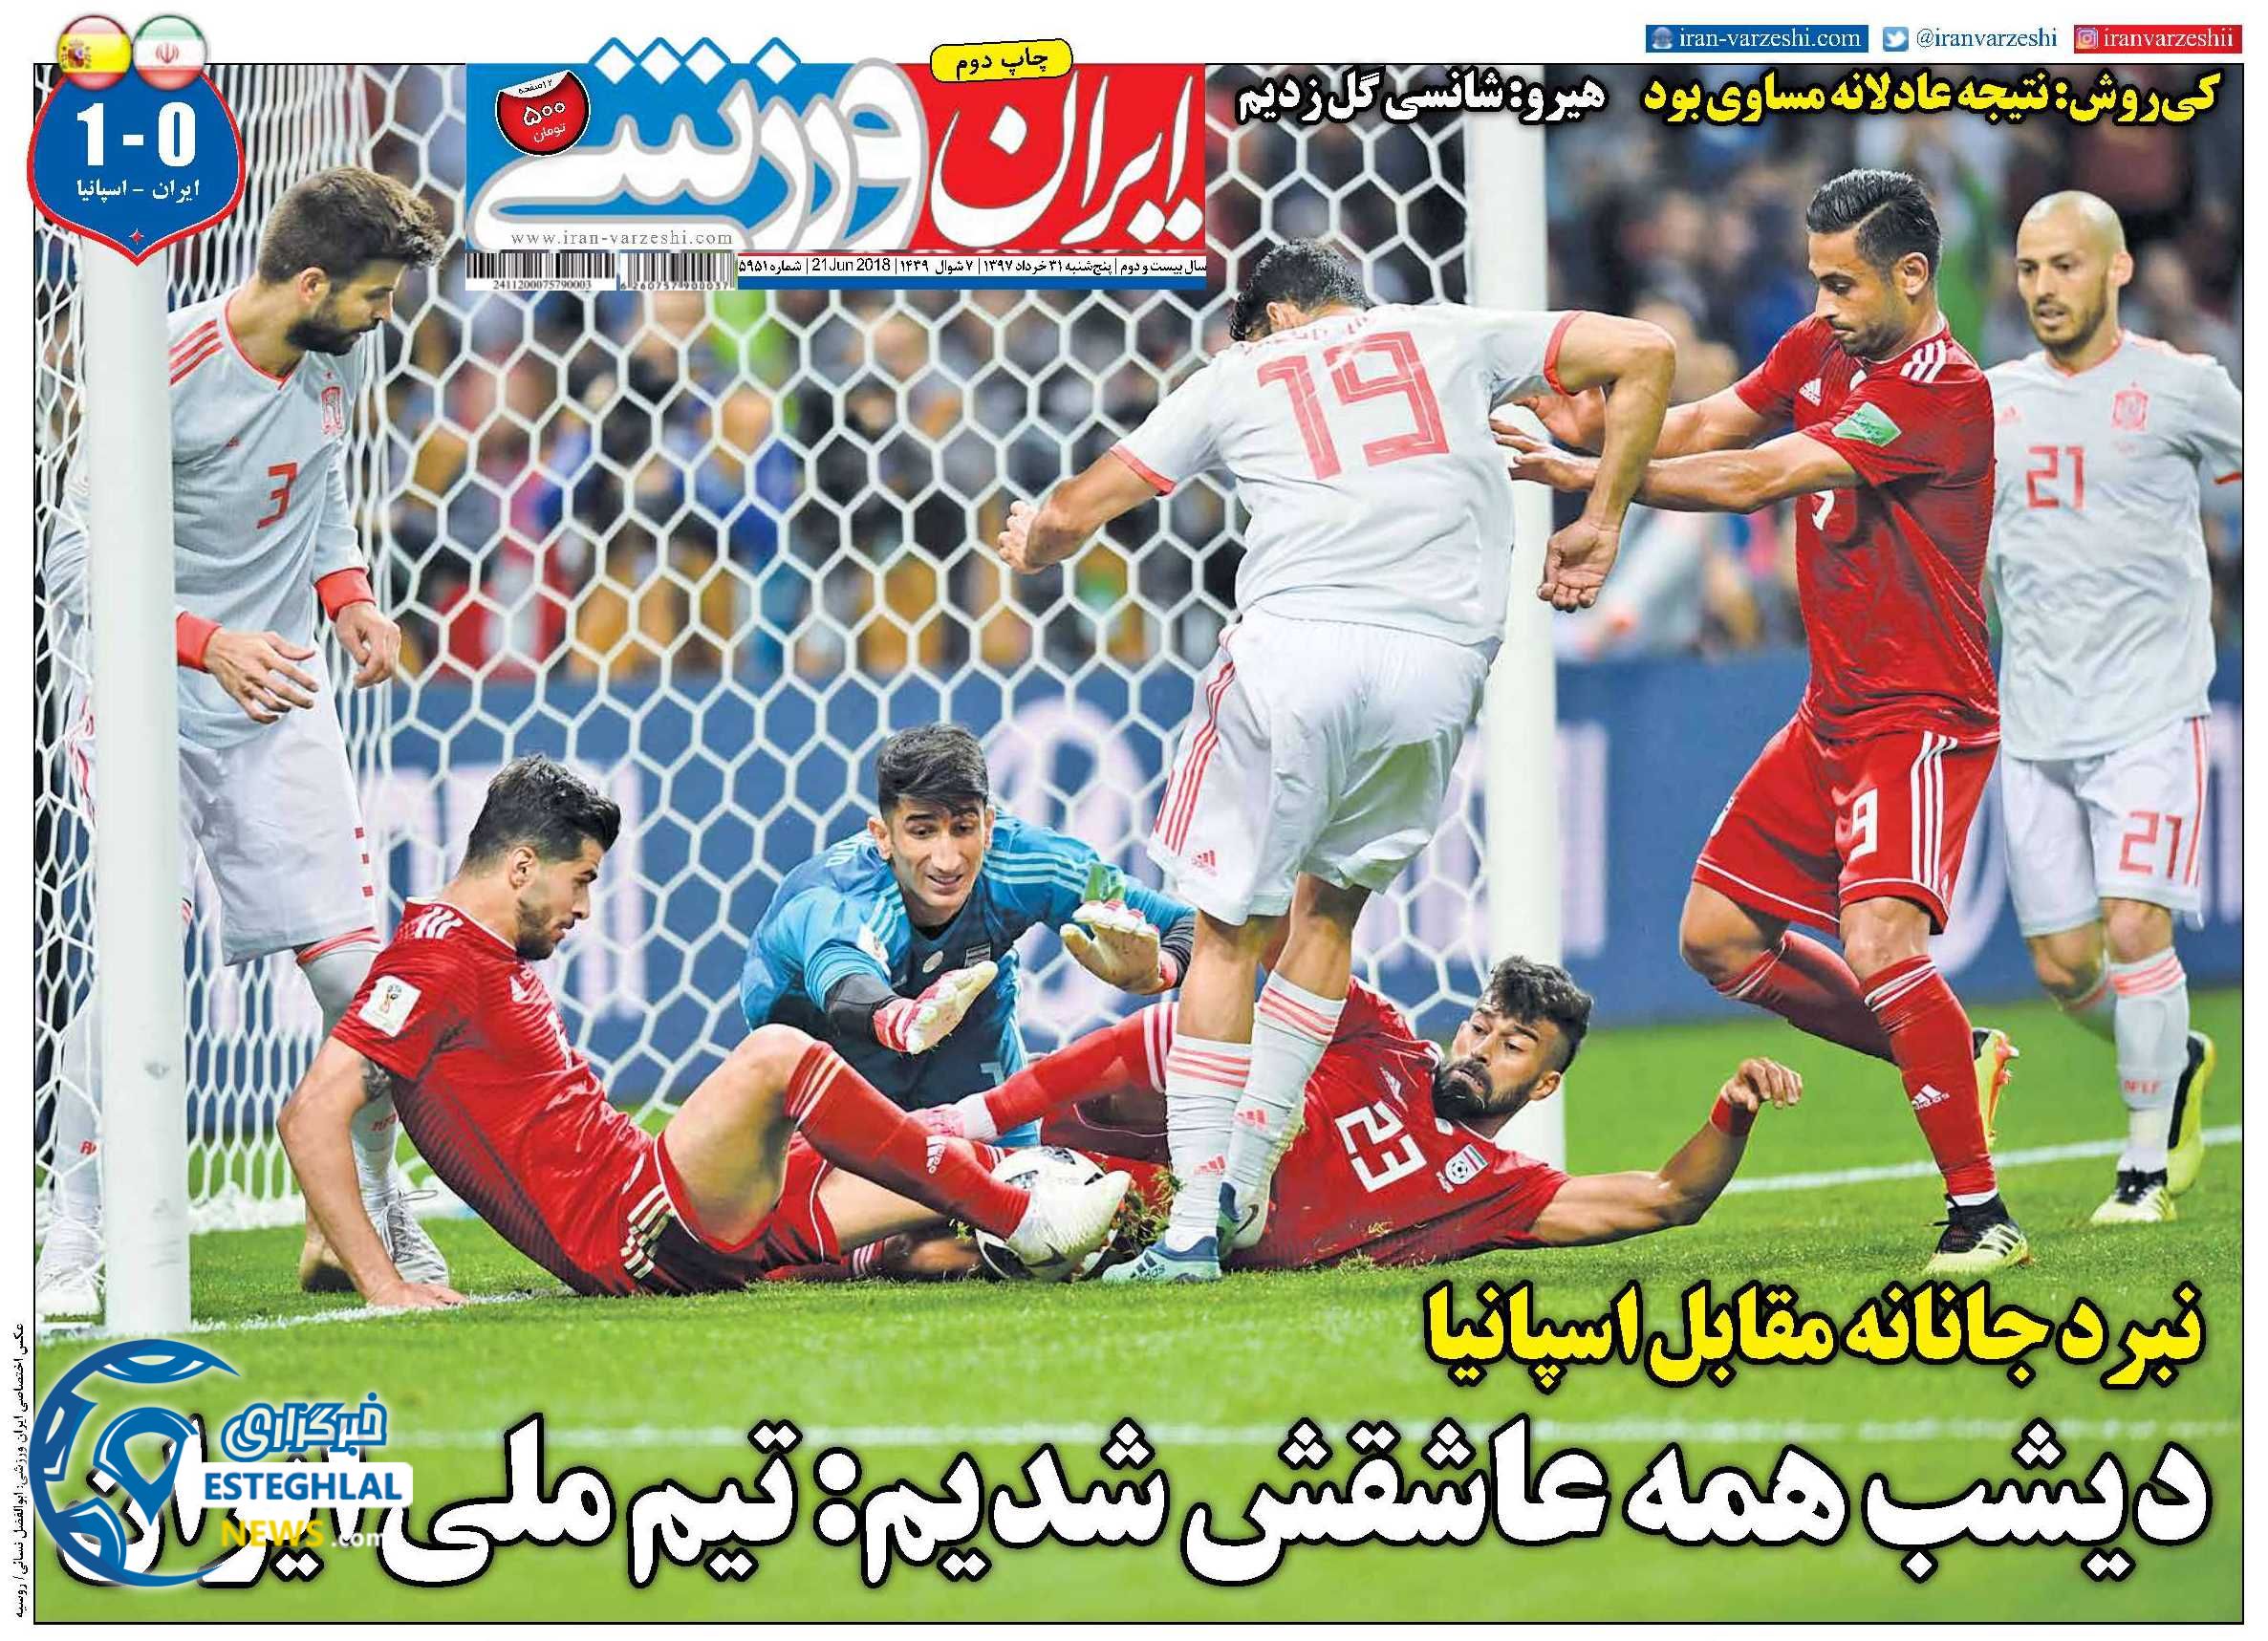   روزنامه ایران ورزشی پنجشنبه 31 خرداد 1397         